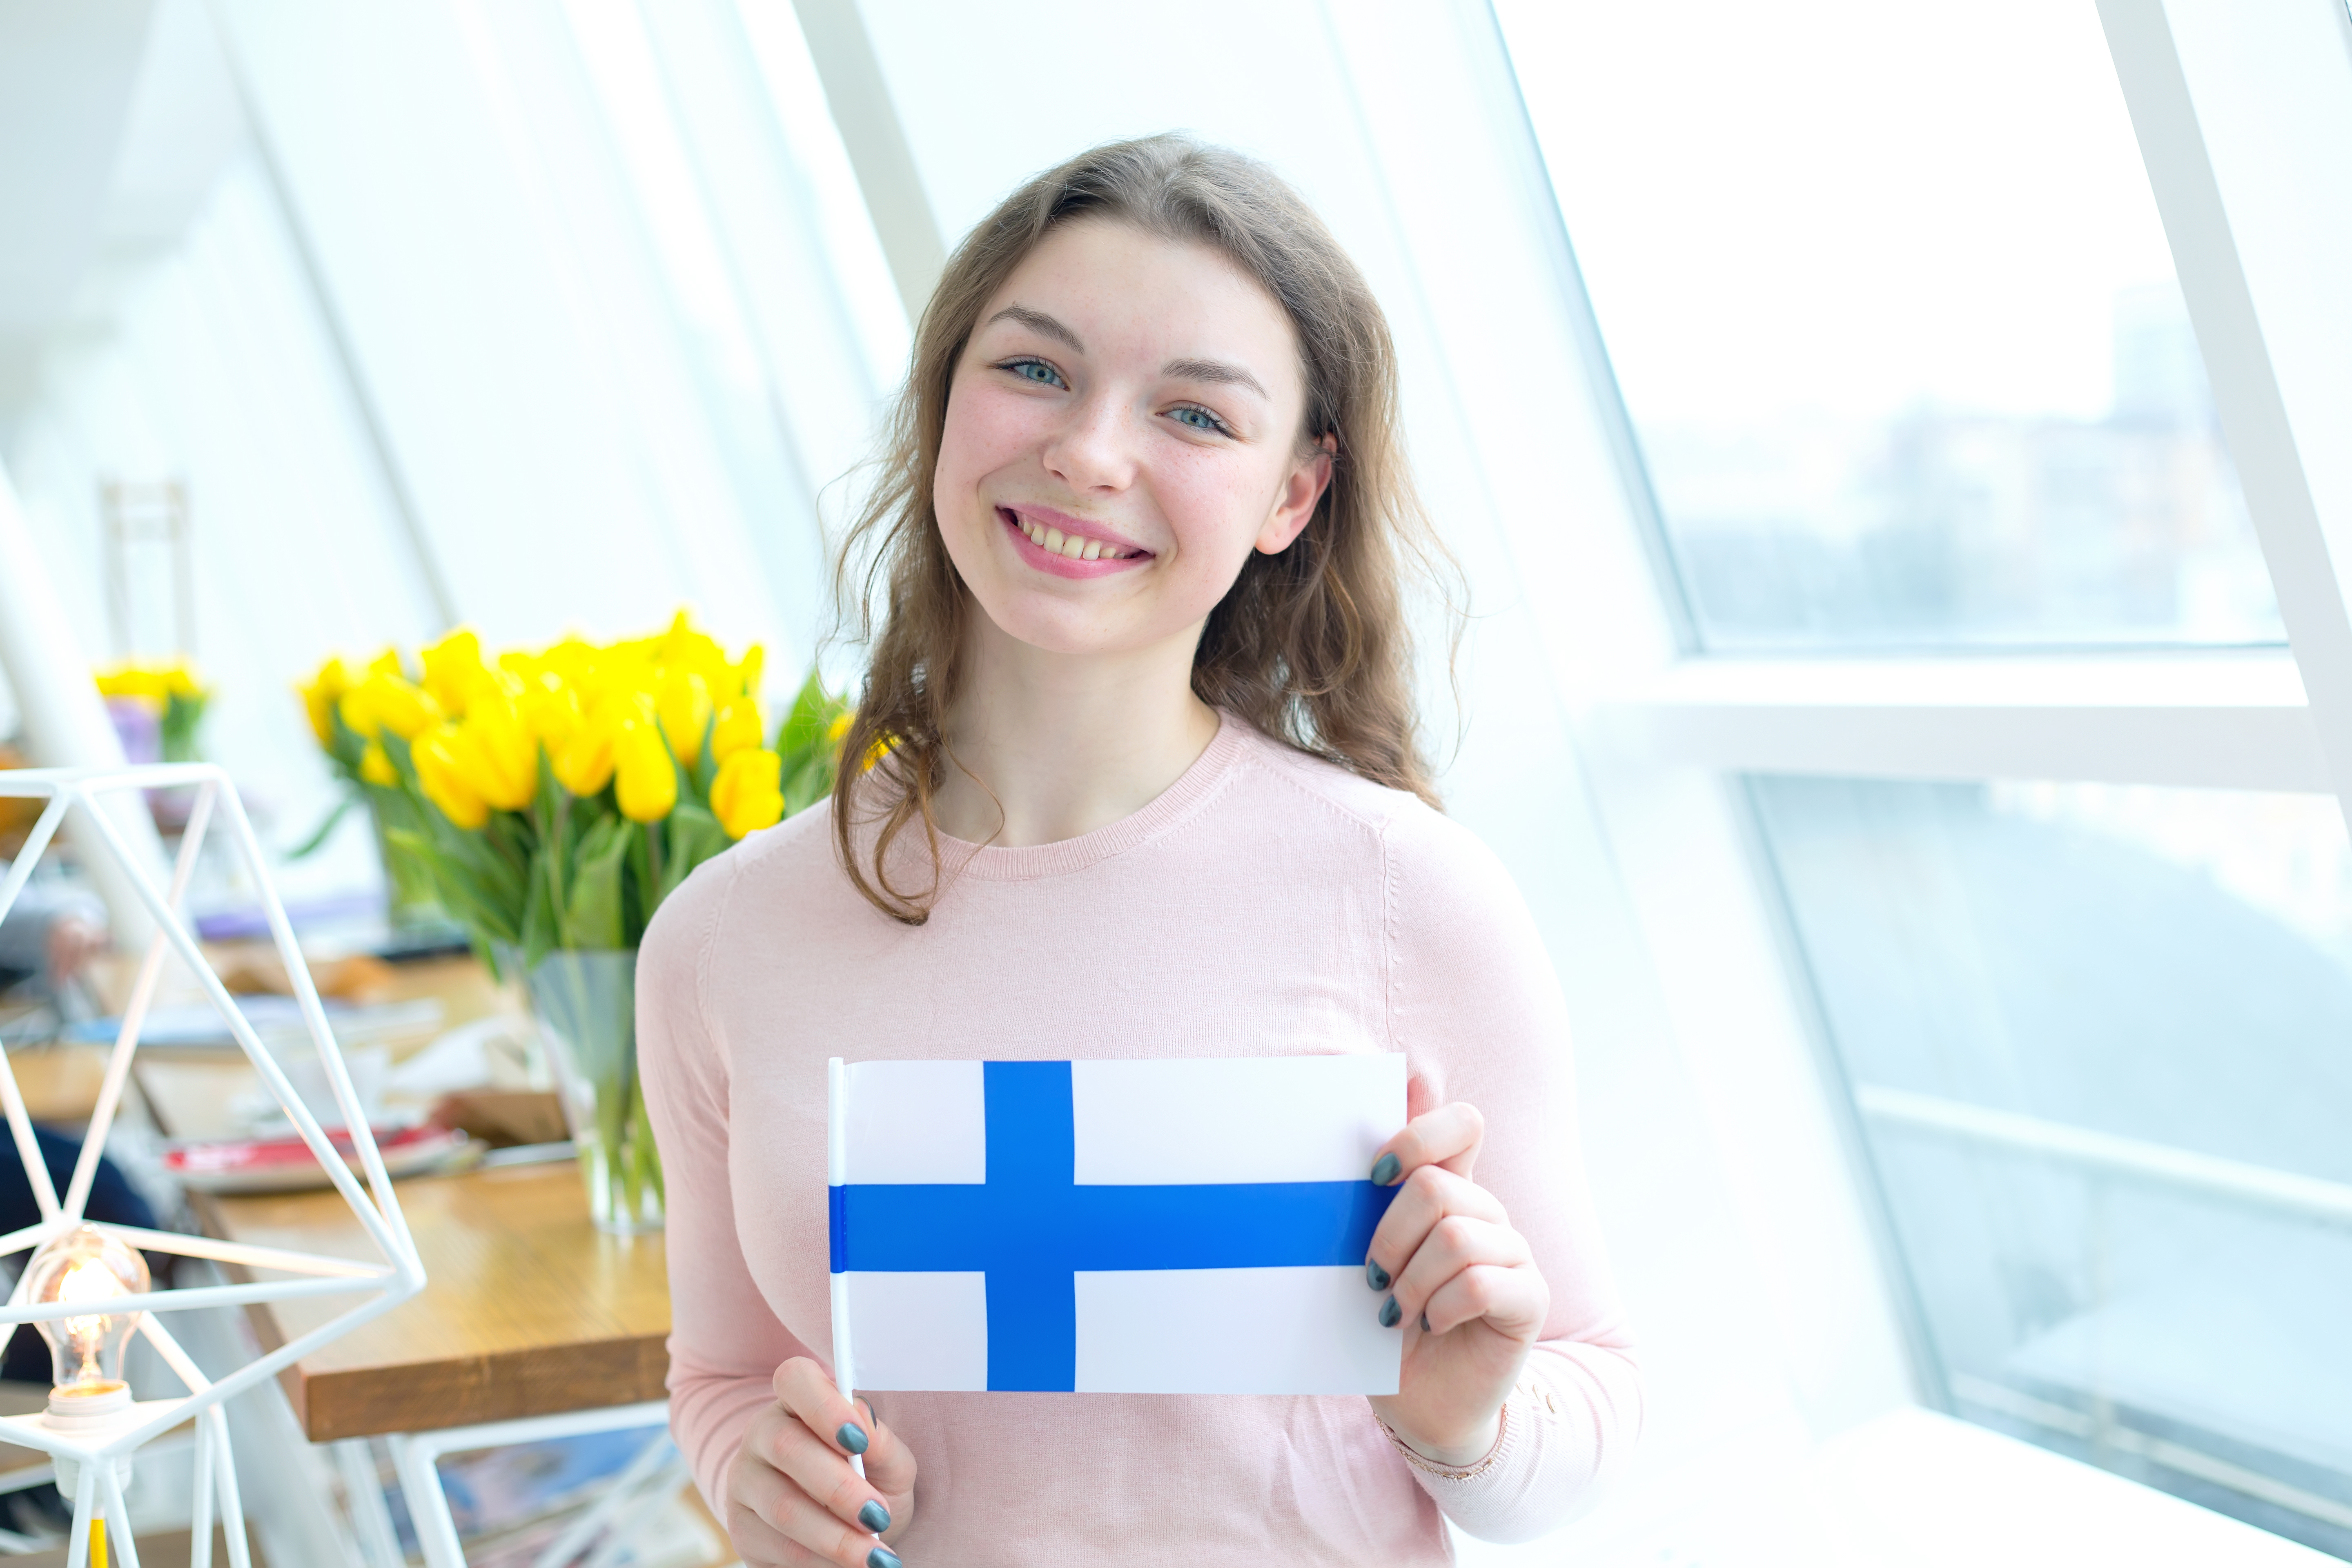 Образовательная система финляндии: перспективы для иностранных школьников и студентов